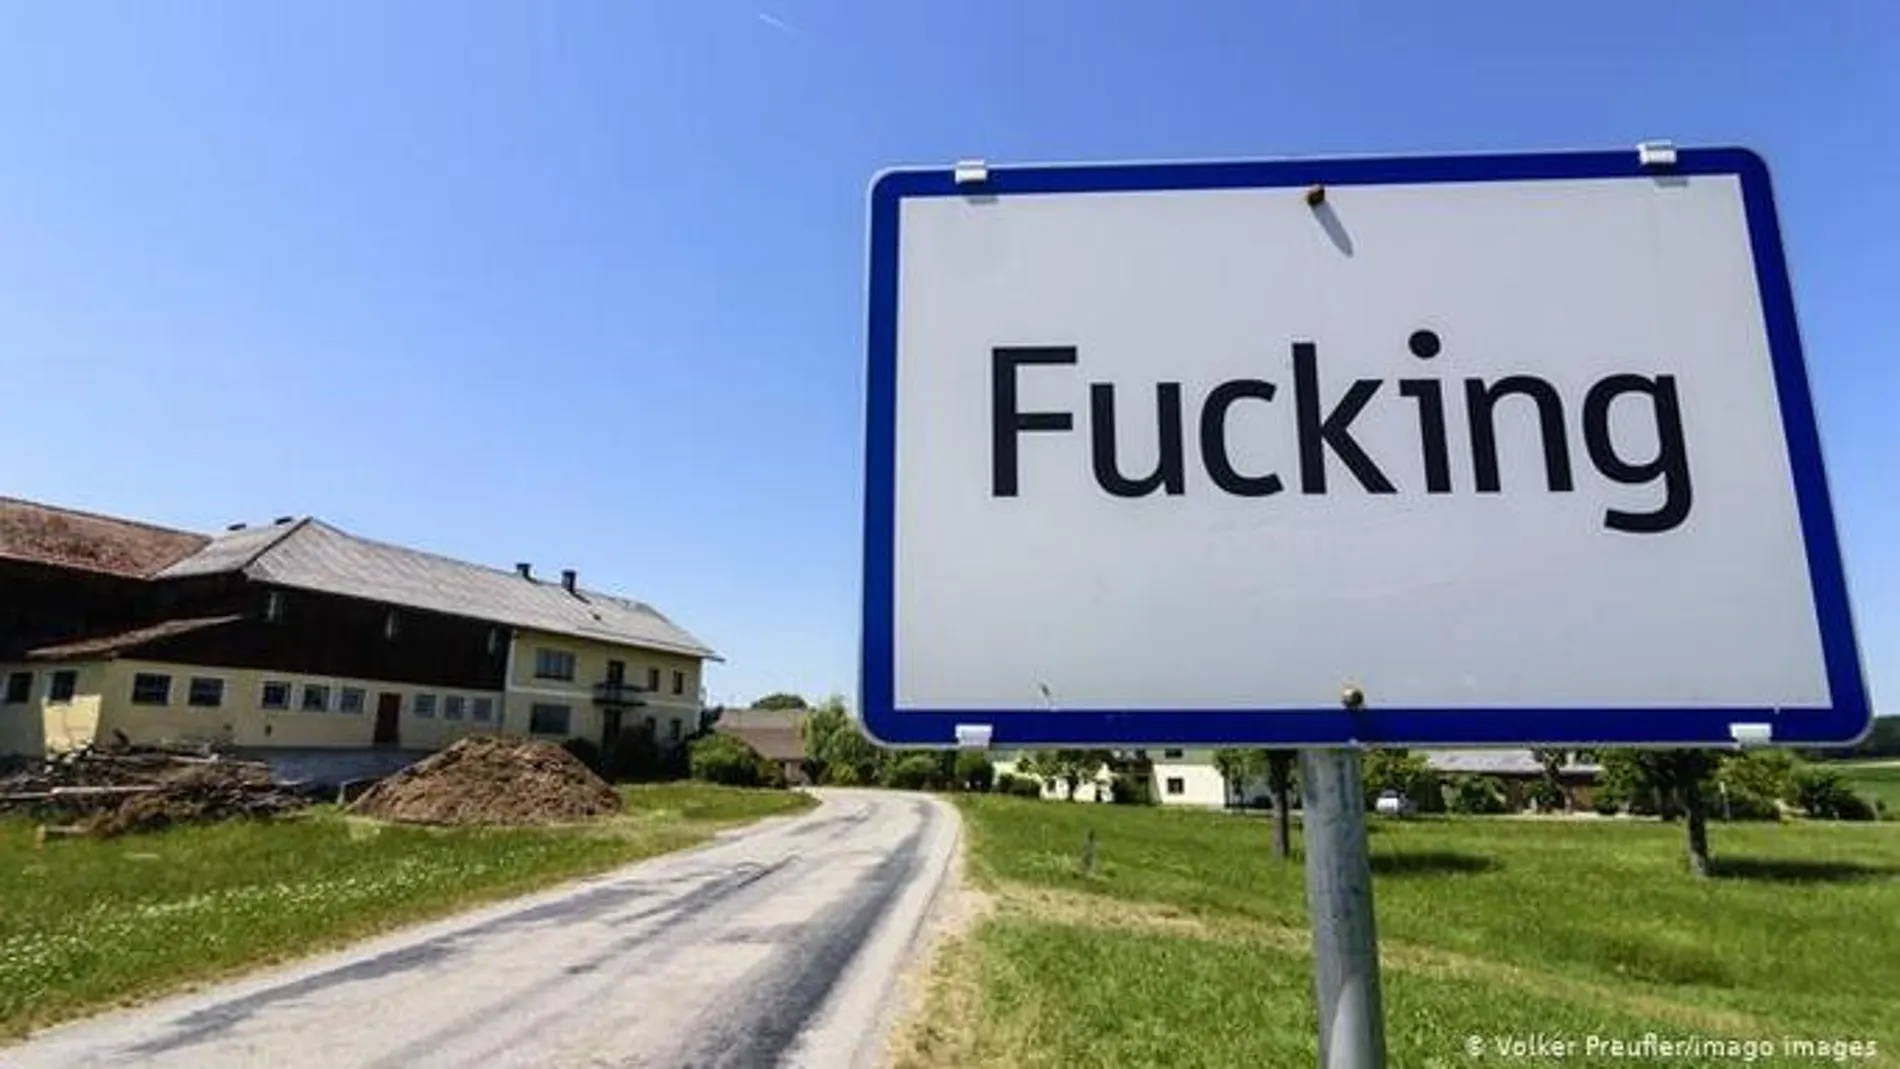 La pequeña aldea austriaca ha decidido cambiar de nombre a partir del 1 de enero